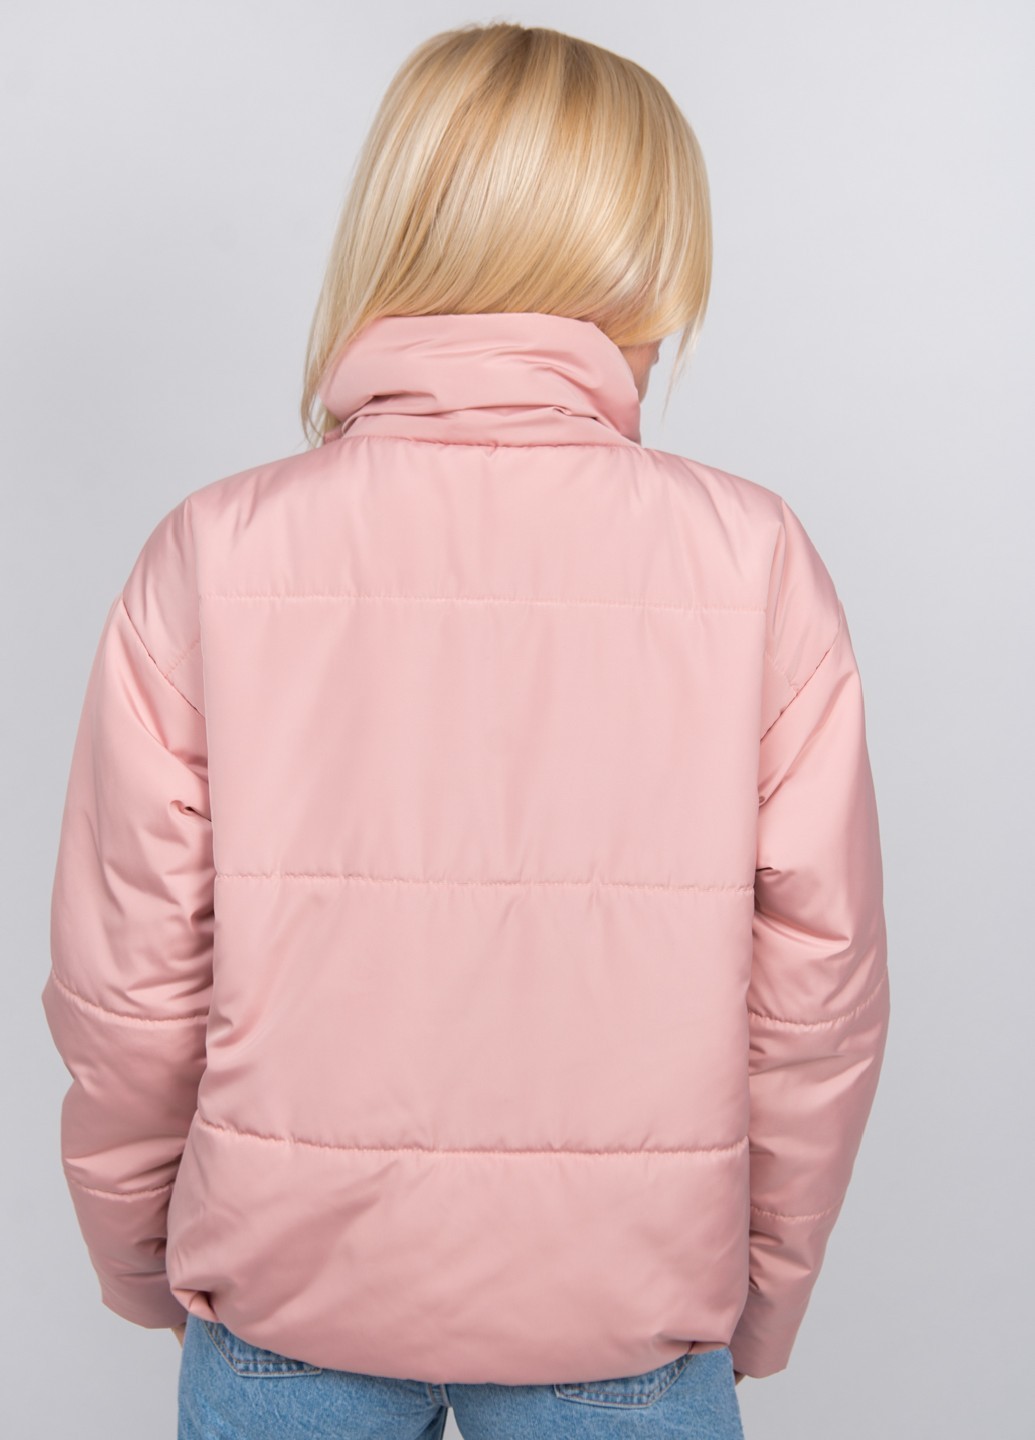 Куртка женская демисезонная пудра 280/104 в интернет-магазине